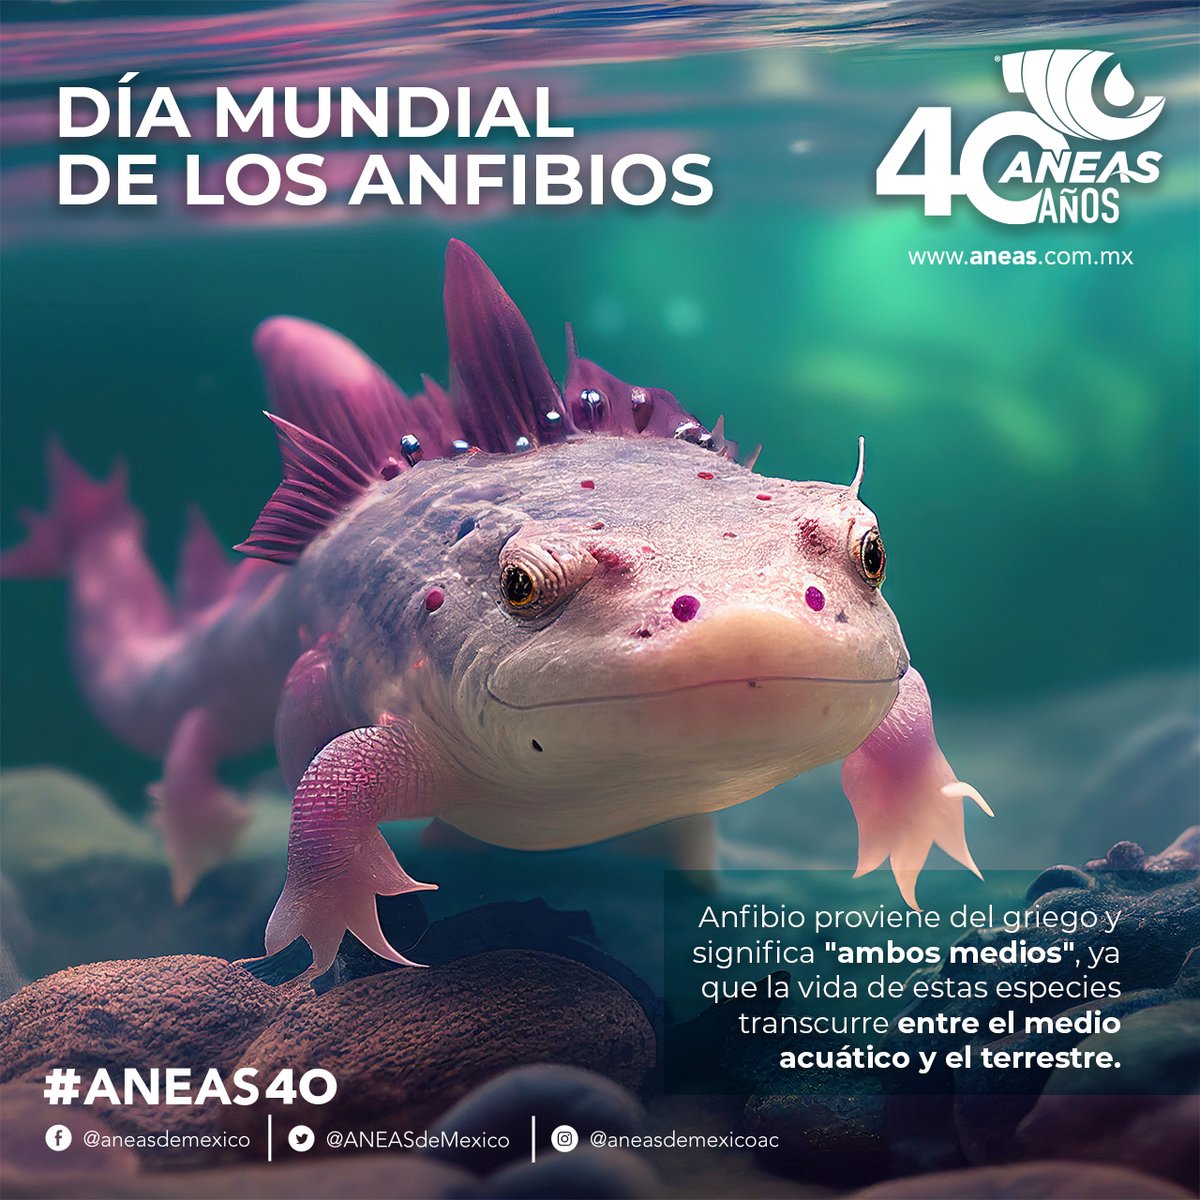 Este #DíaMundialDeLosAnfibios no olvidemos que nuestro país ocupa el quinto lugar de diversidad de anfibios 🐸con 376 especies. Tú, ¿qué especies conoces? ¡Cuéntanos! #ANEAS40 #LaRedHidricaDeMexico #CulturaDelAgua